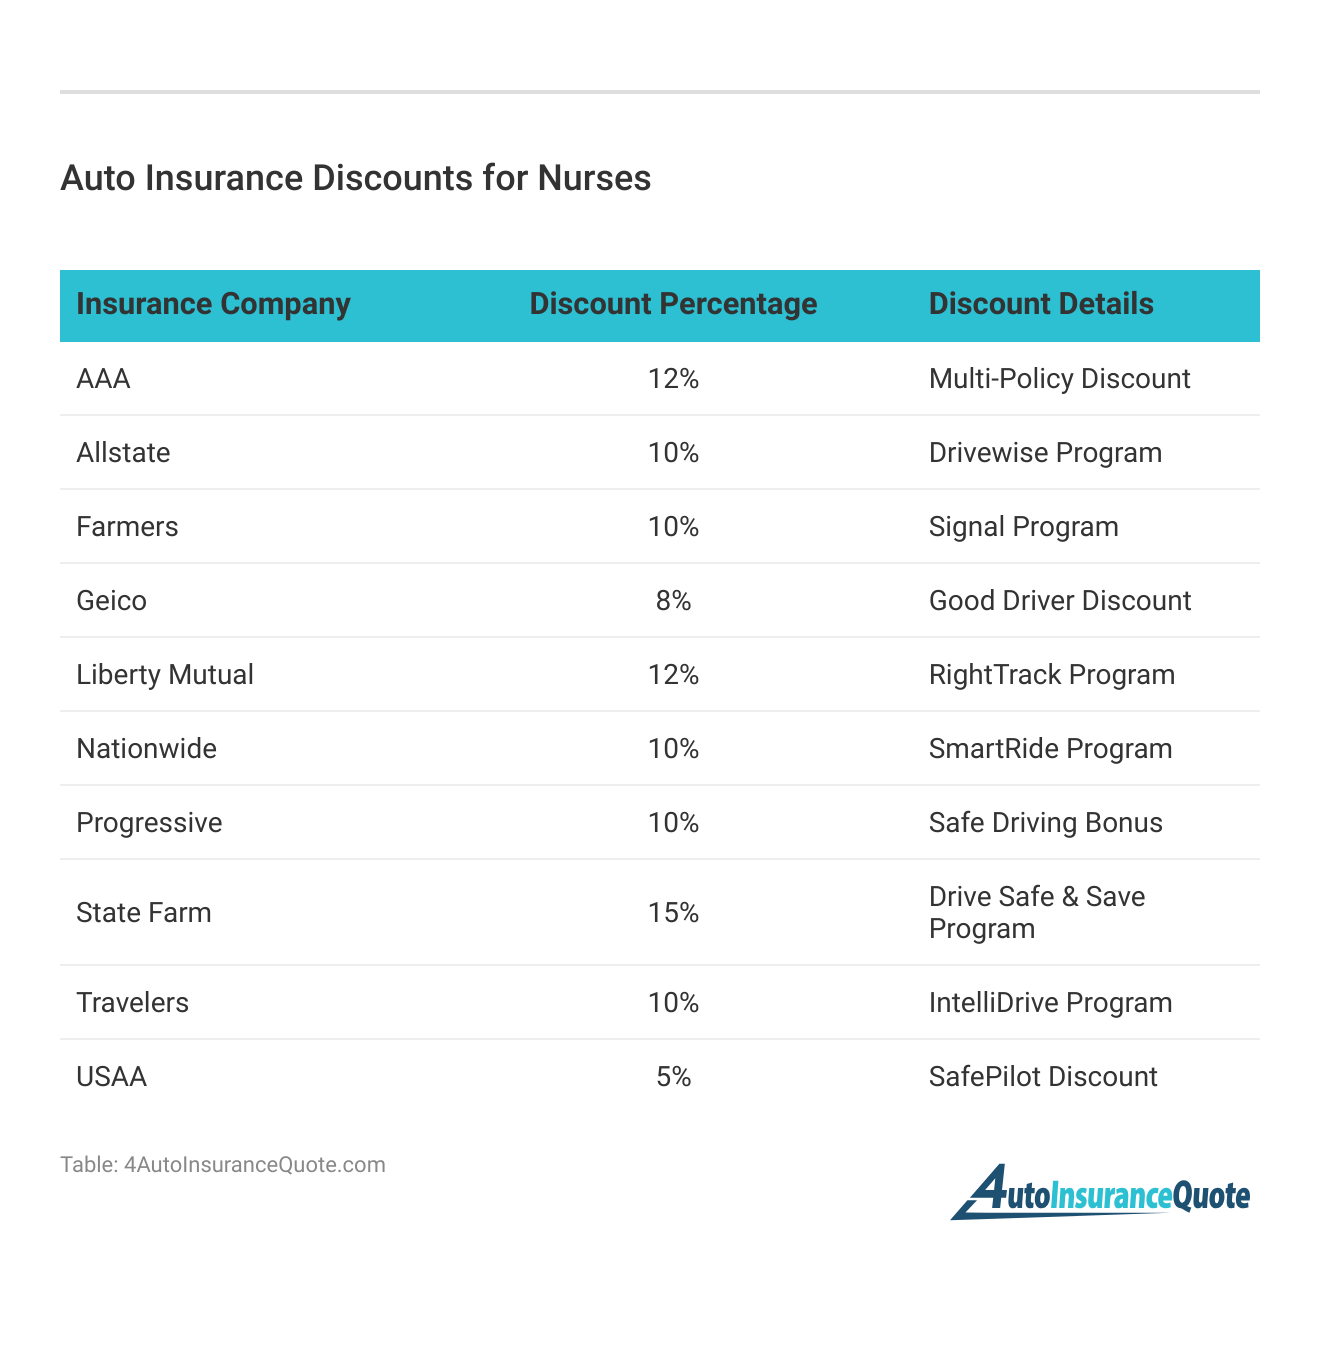 <h3>Auto Insurance Discounts for Nurses</h3>